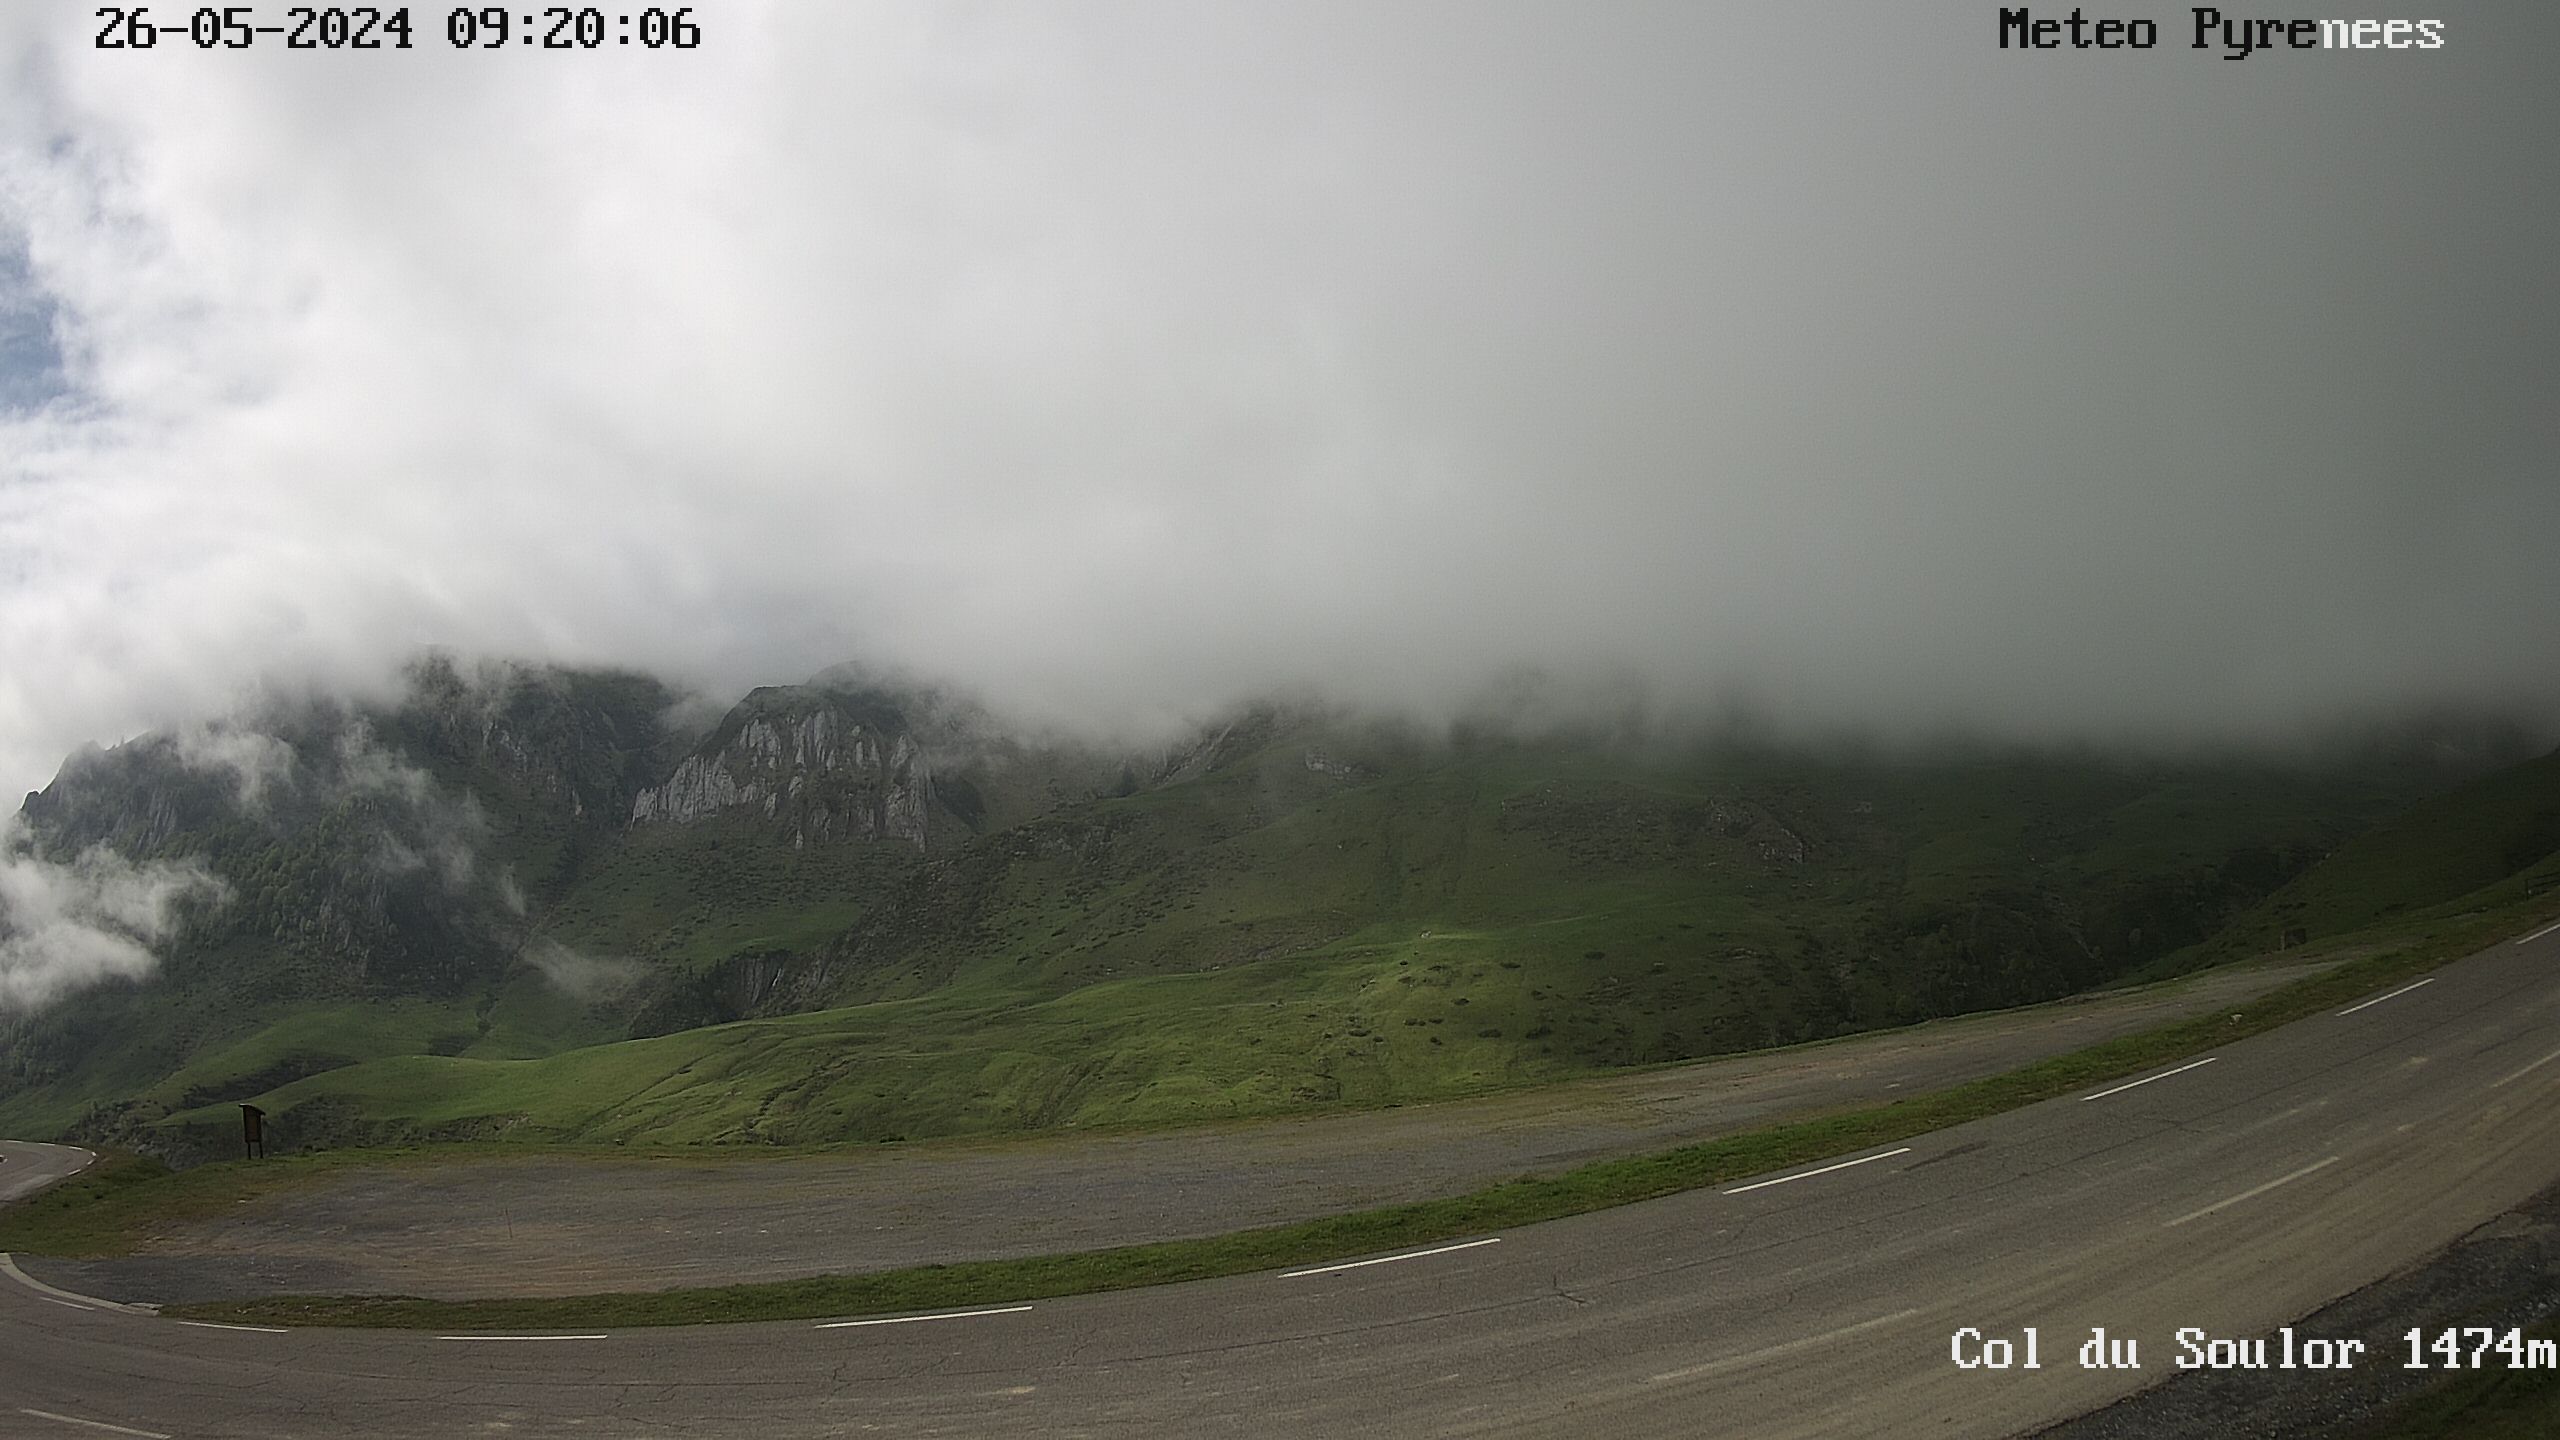 <h2>Webcam située au niveau du col de Soulor dans les Hautes Pyrénées</h2>